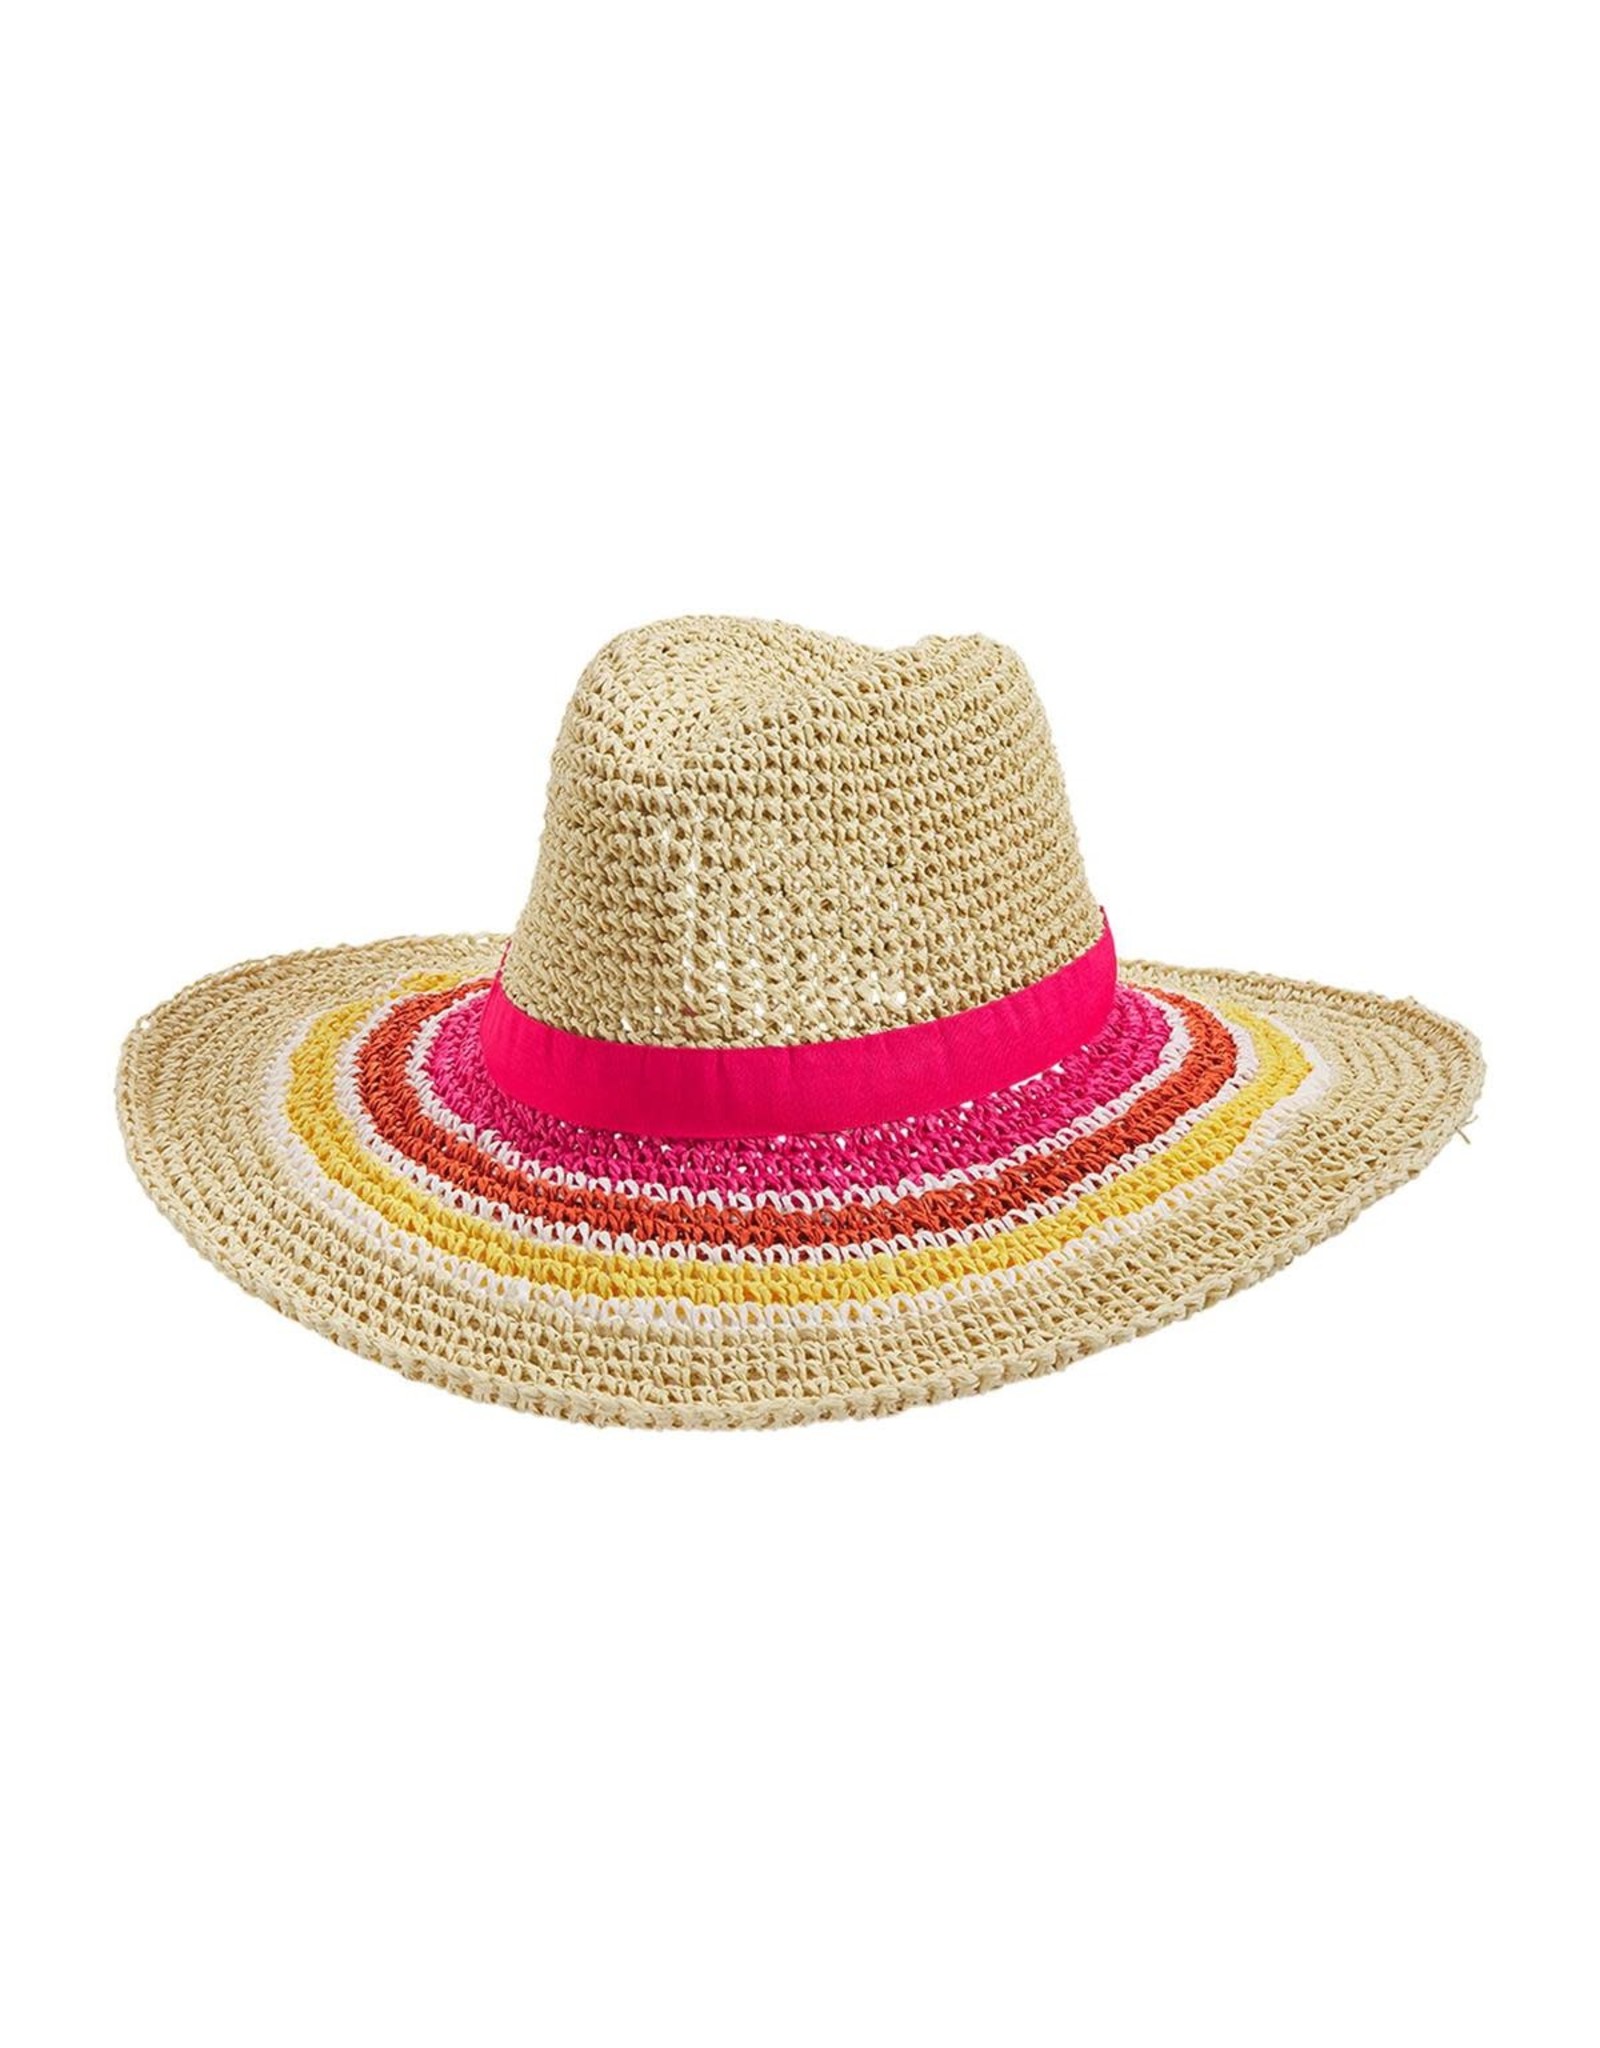 Mud Pie Women's Hats - Striped Straw Fedora - Pink